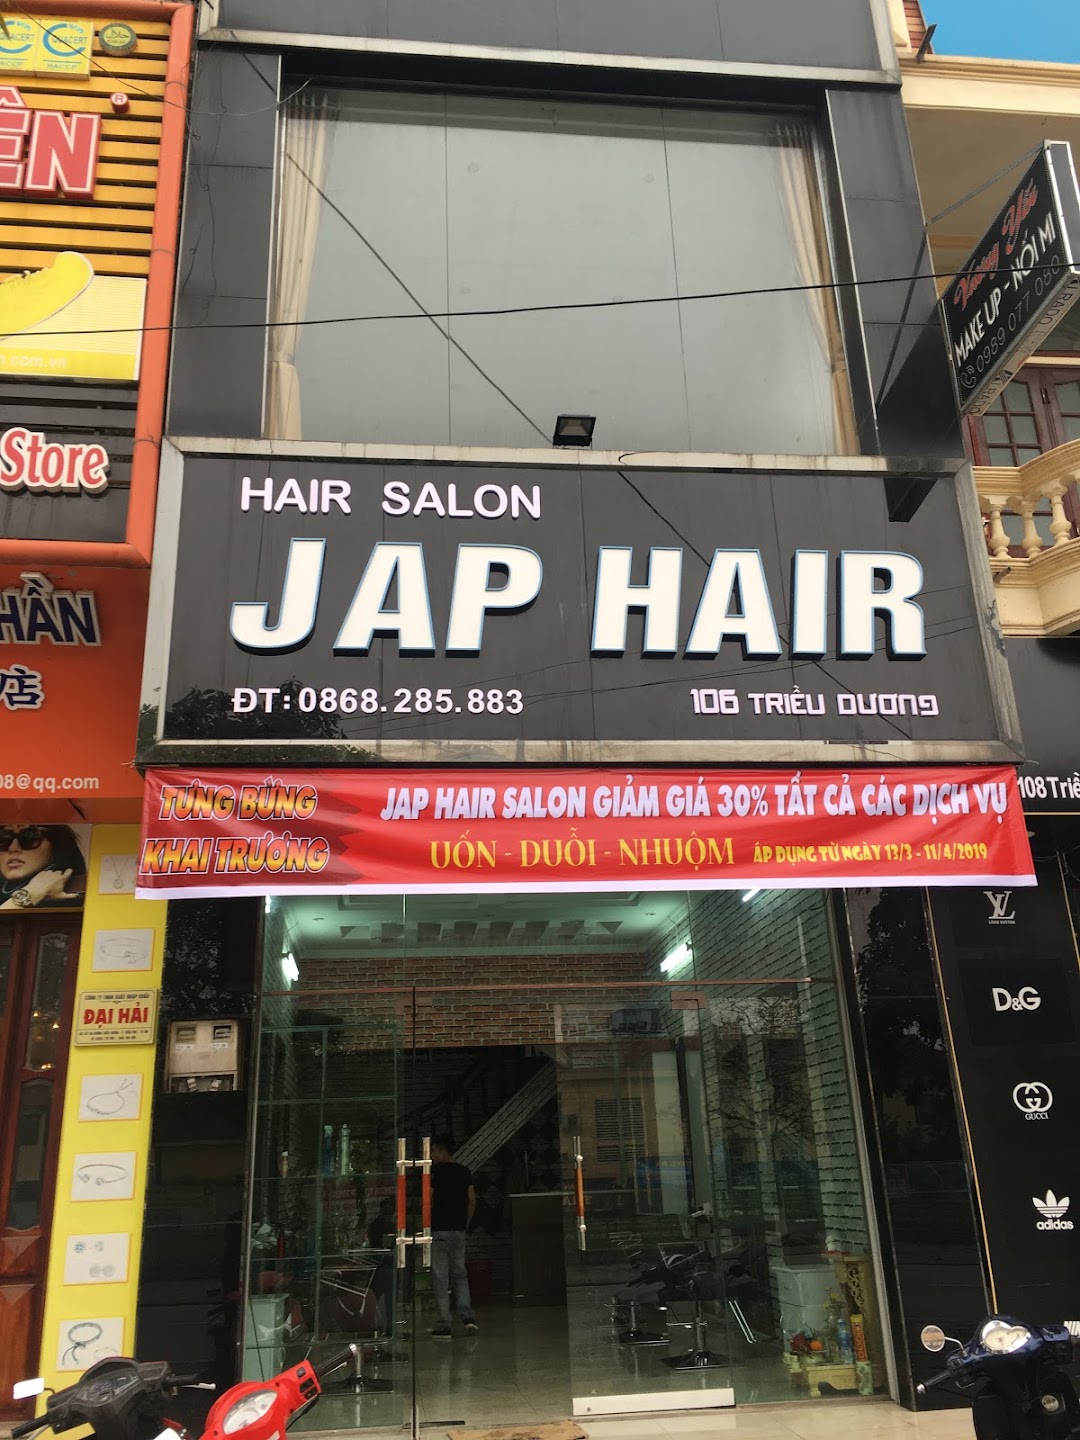 Hair salon Jap Hair